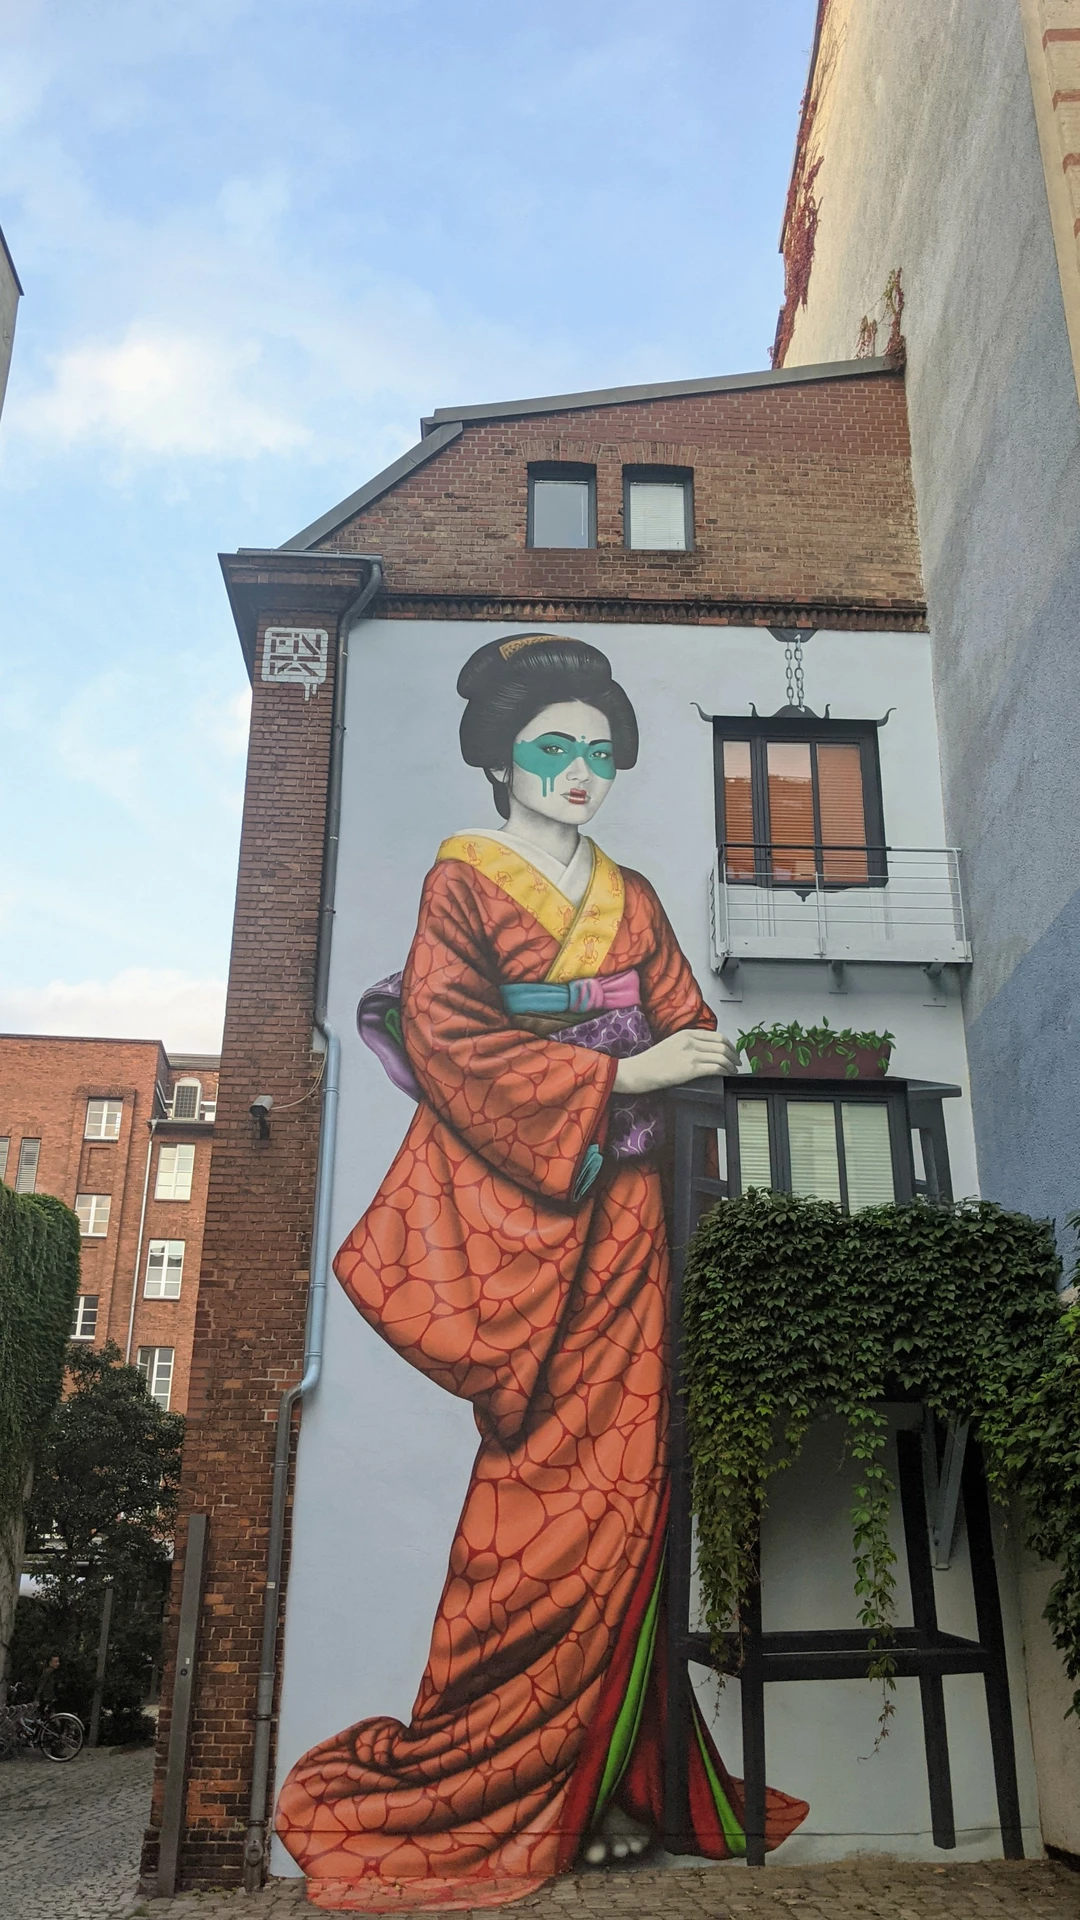 Oeuvre de Street Art réalisée par Fin DAC à Berlin